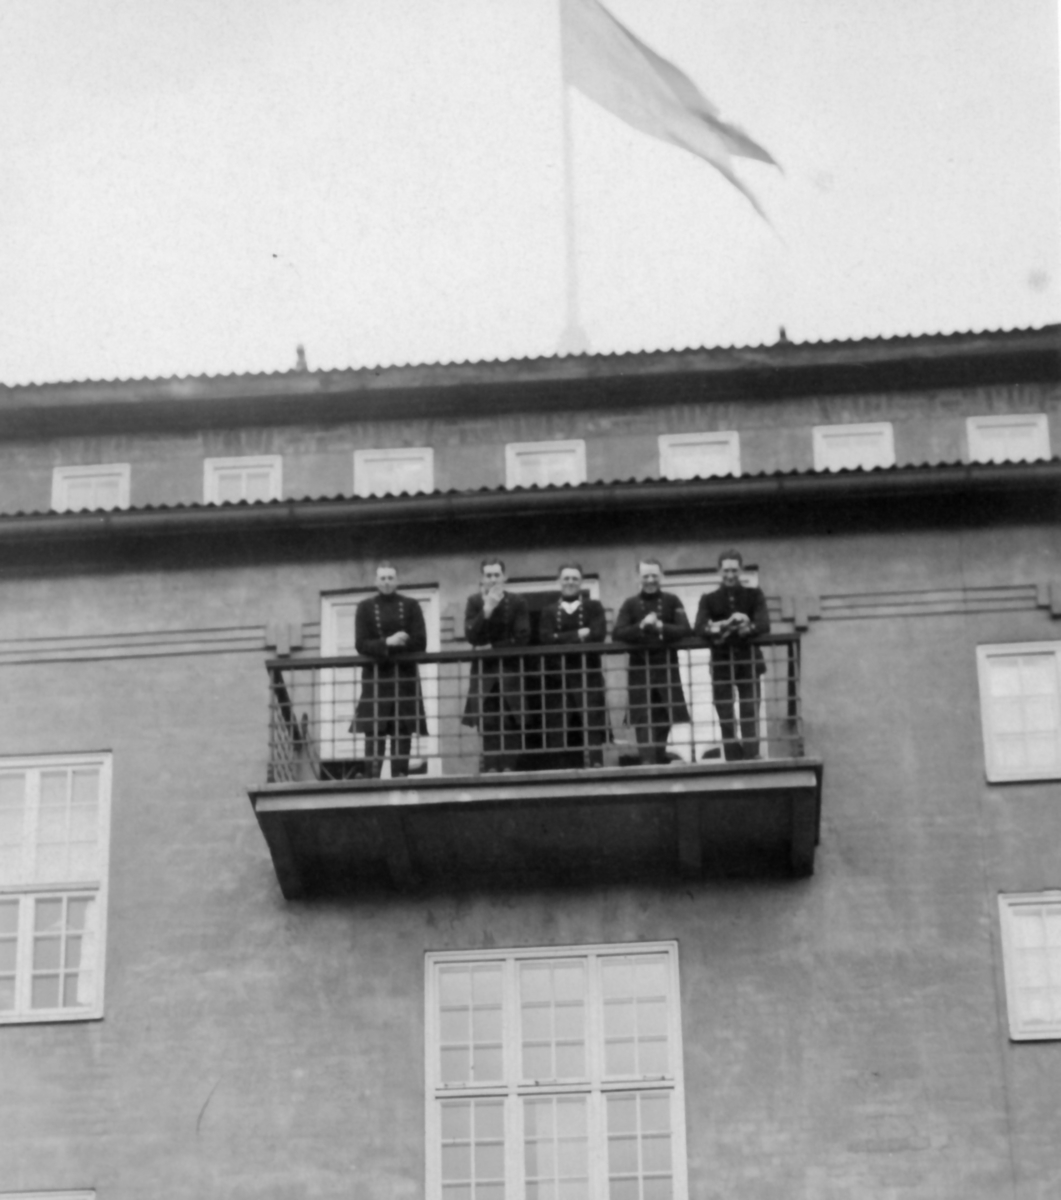 Kanslihuset balkong mot kaserngården, 1920-talet

Fr. v.
Per Kellin, senare general och rikshemvärnschef
Holger Burén
Fritz Eriksson 
Stig Karlströmer
Sven Almqvist.